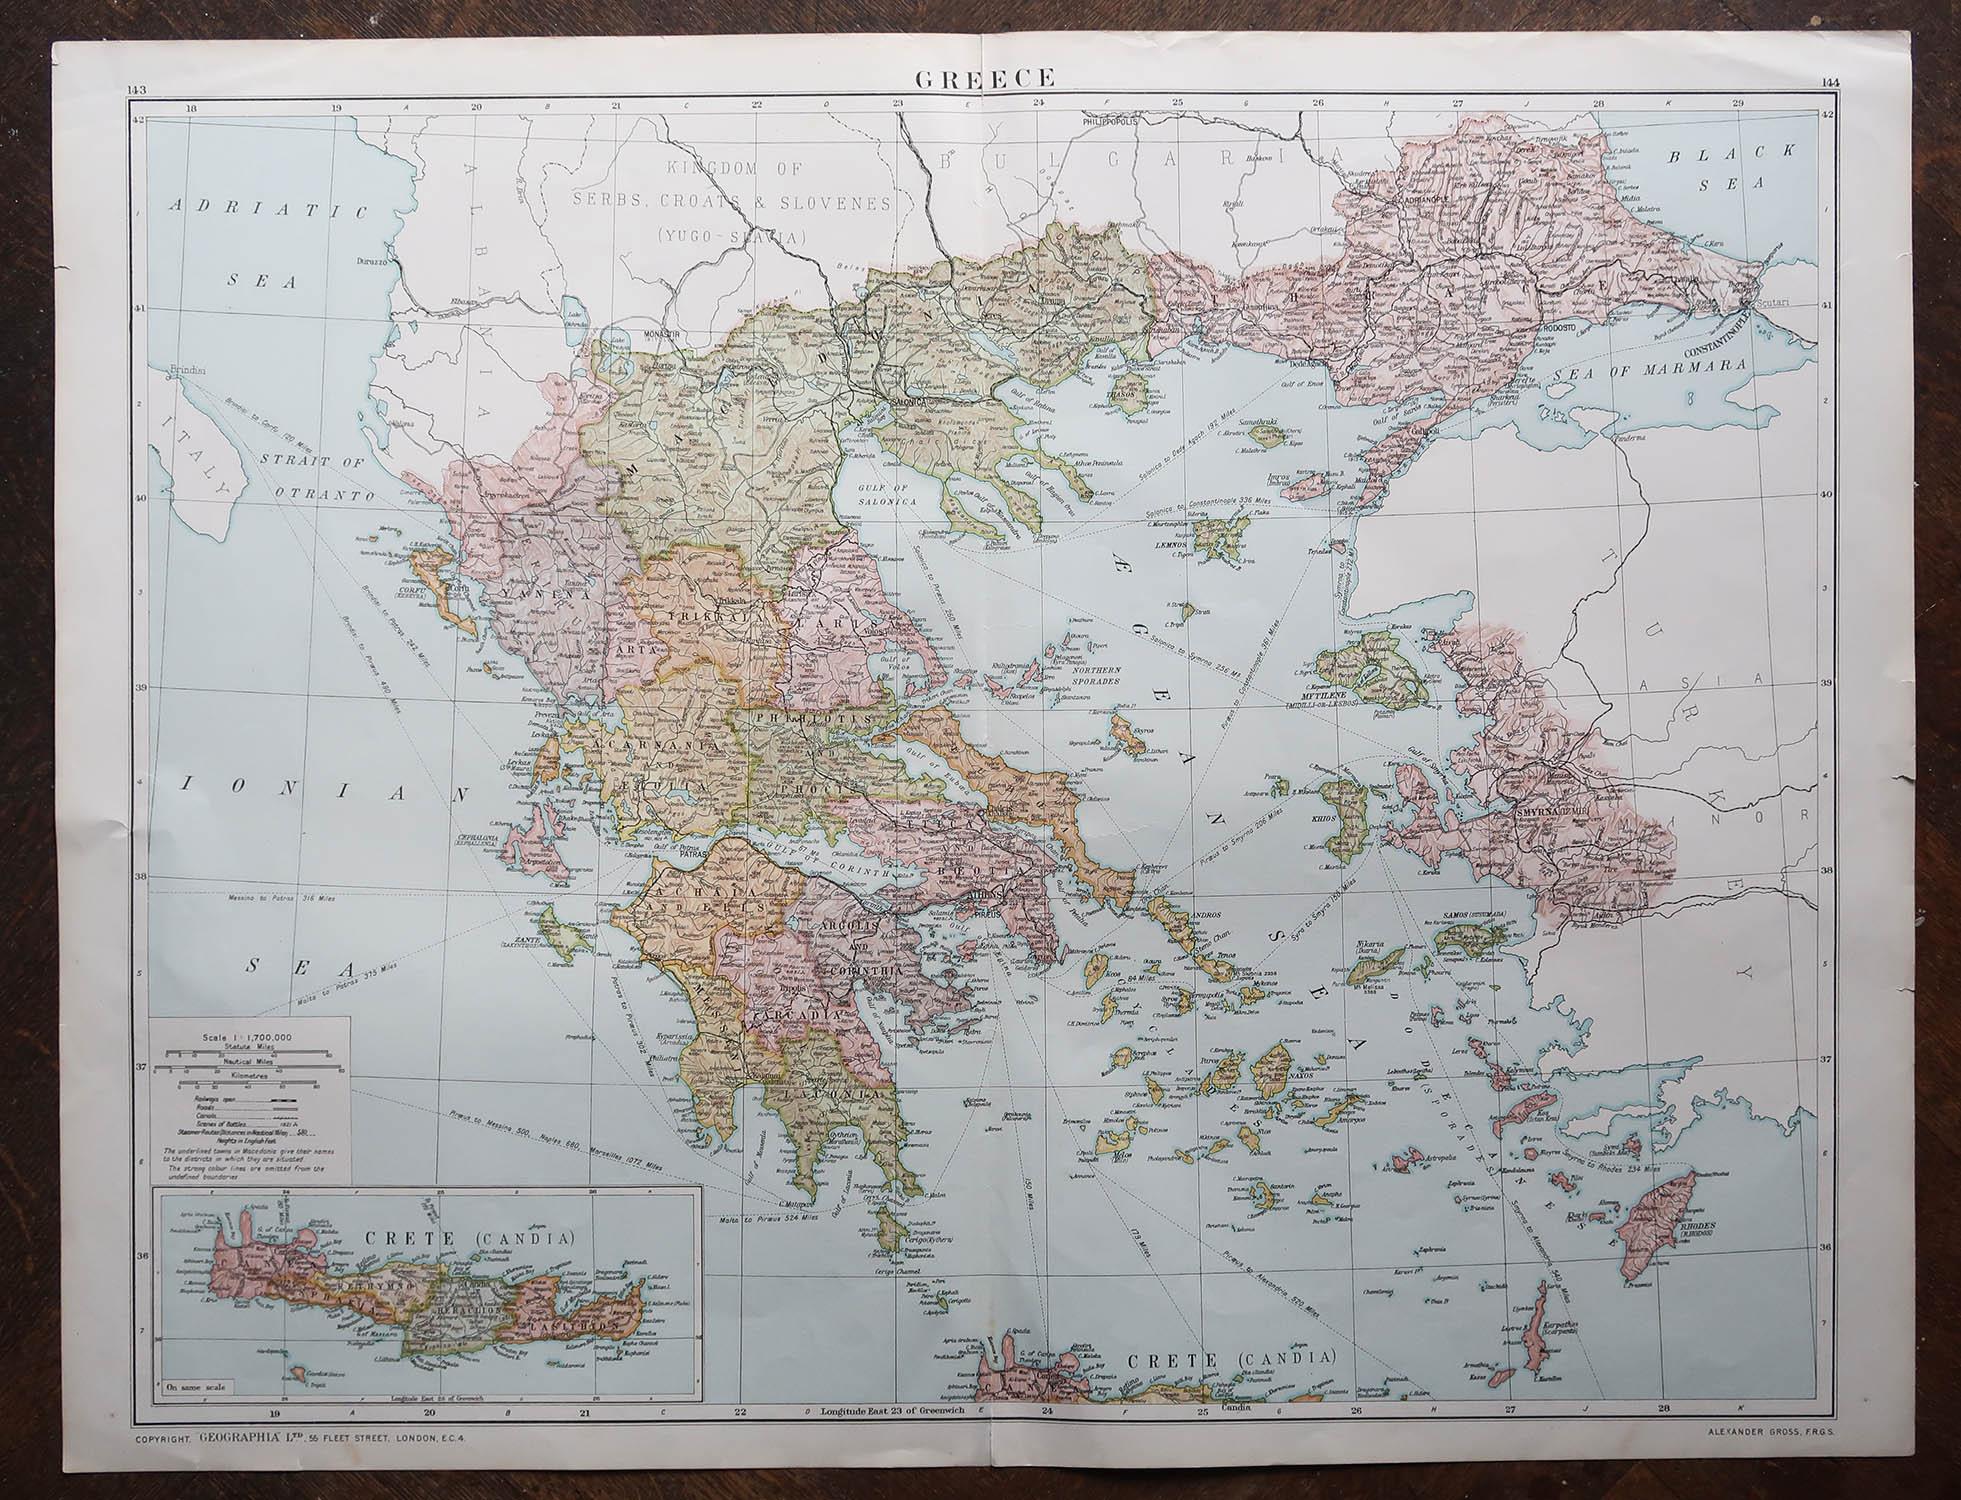 Autre Grande carte originale de la Grèce, datant d'environ 1920